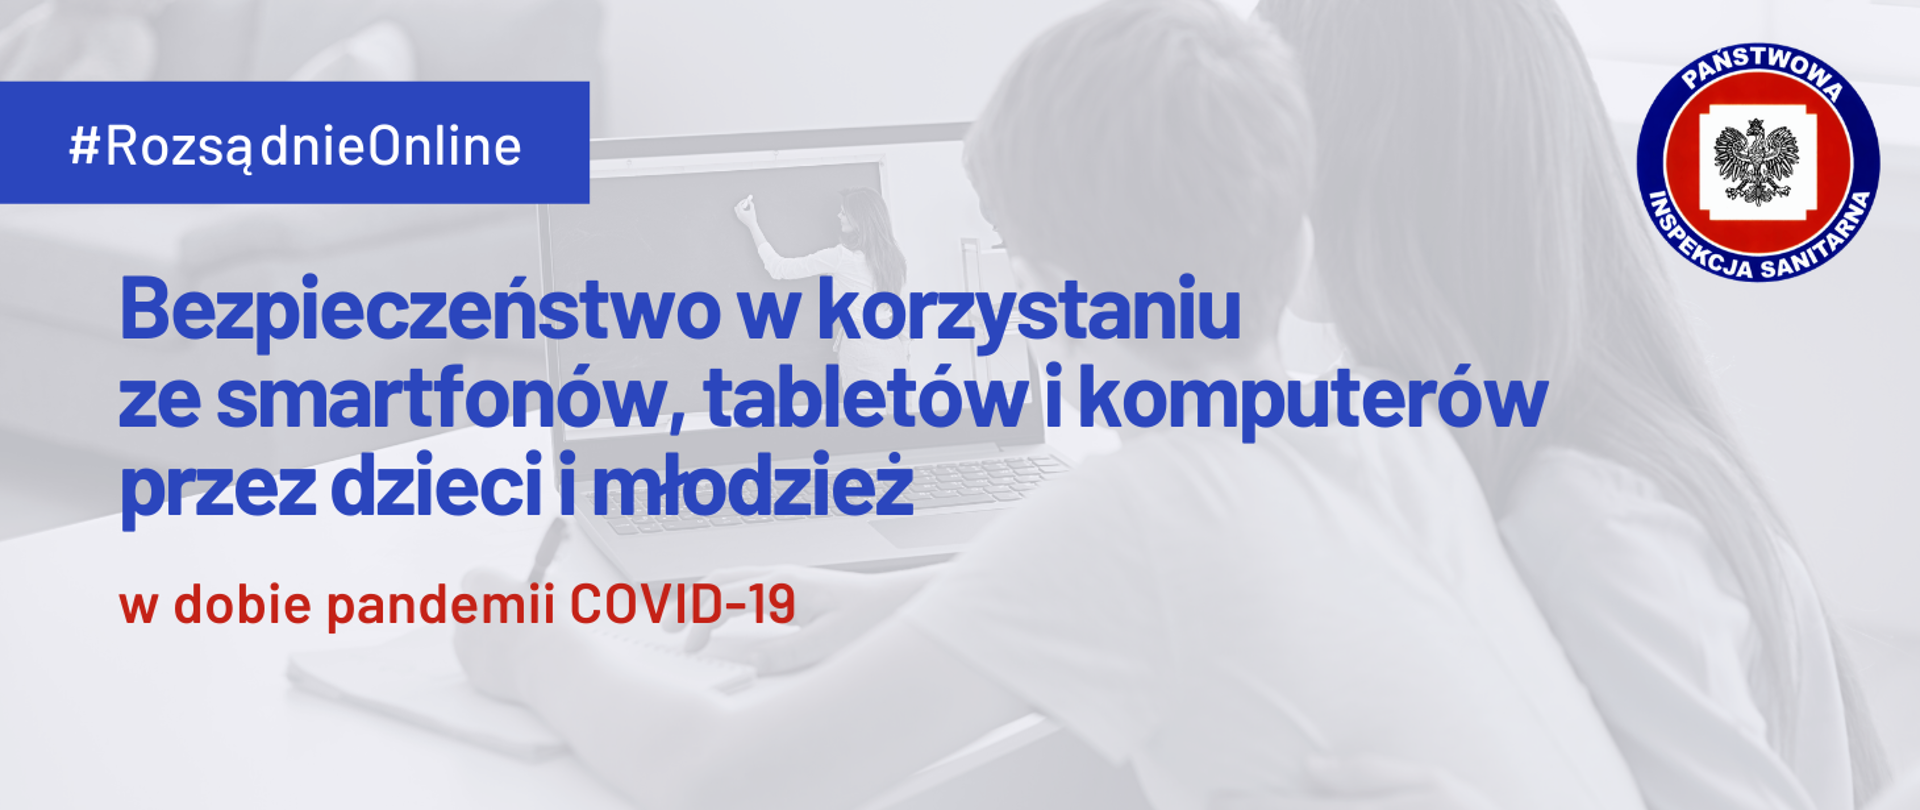 Bezpieczeństwo w korzystaniu ze smartfonów, tabletów i komputerów przez dzieci i młodzież w dobie pandemii COVID-19